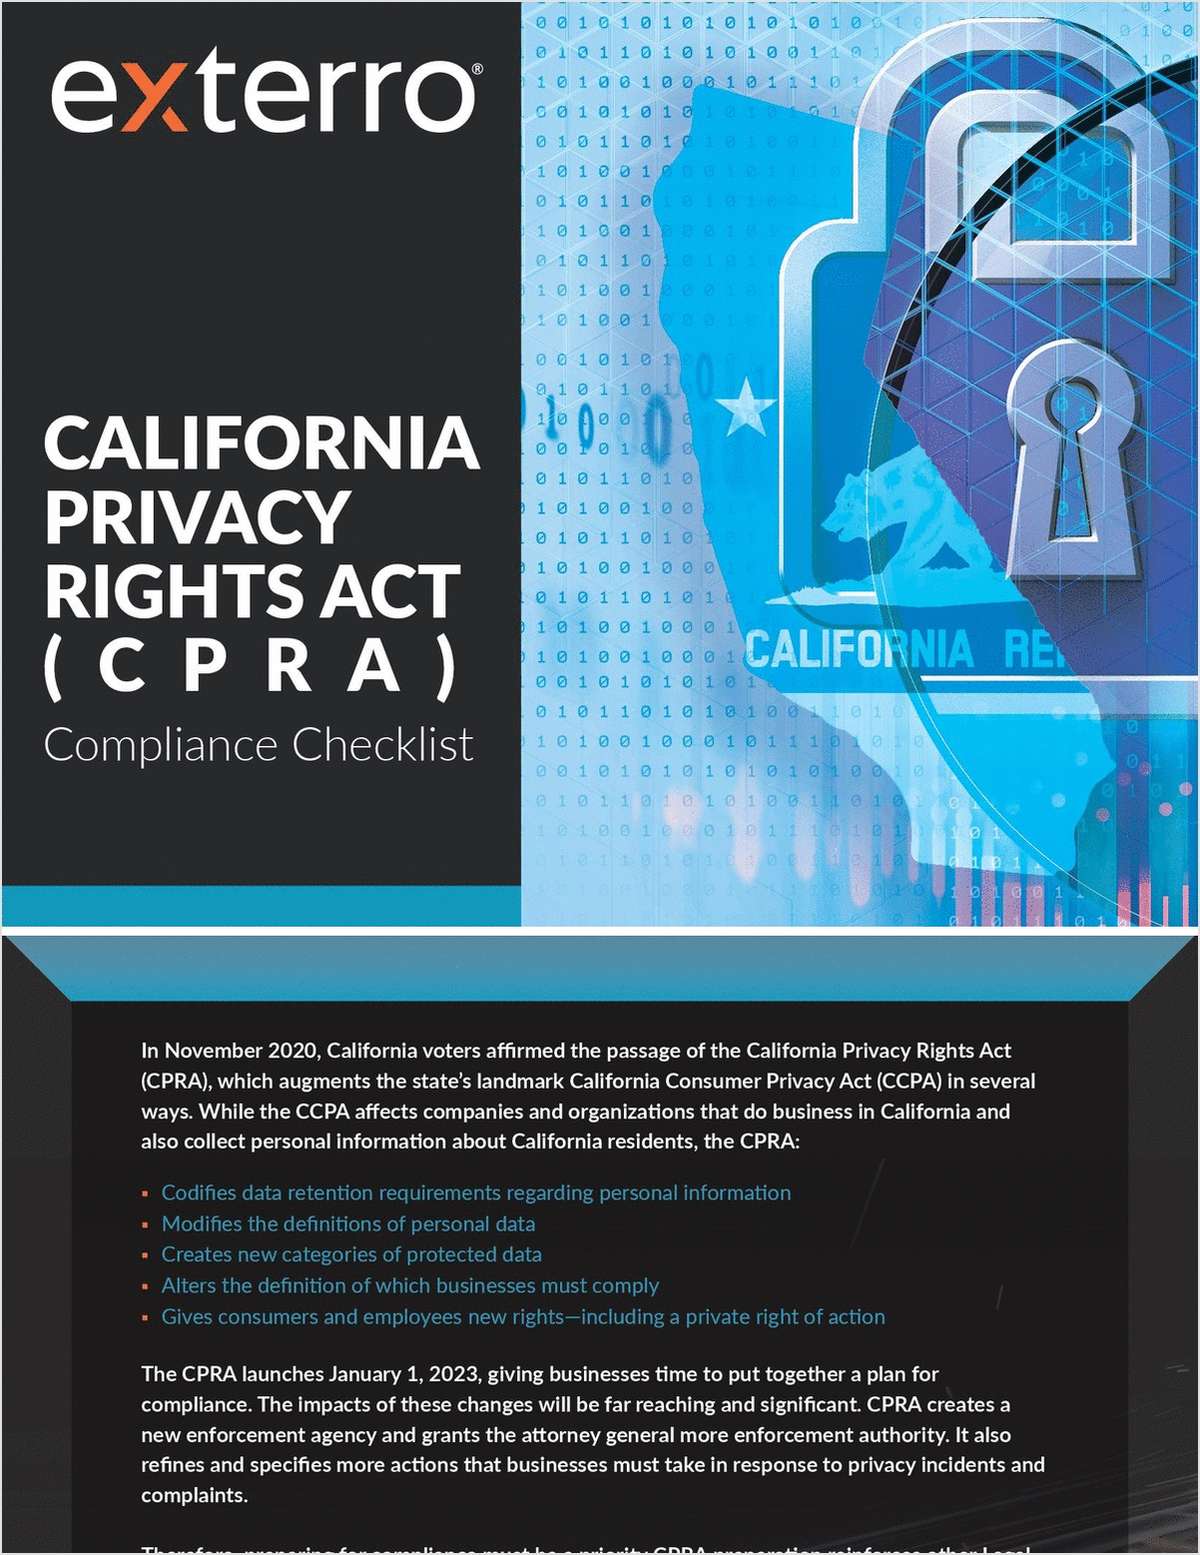 California Privacy Rights Act (CPRA) Compliance Checklist Free Checklist